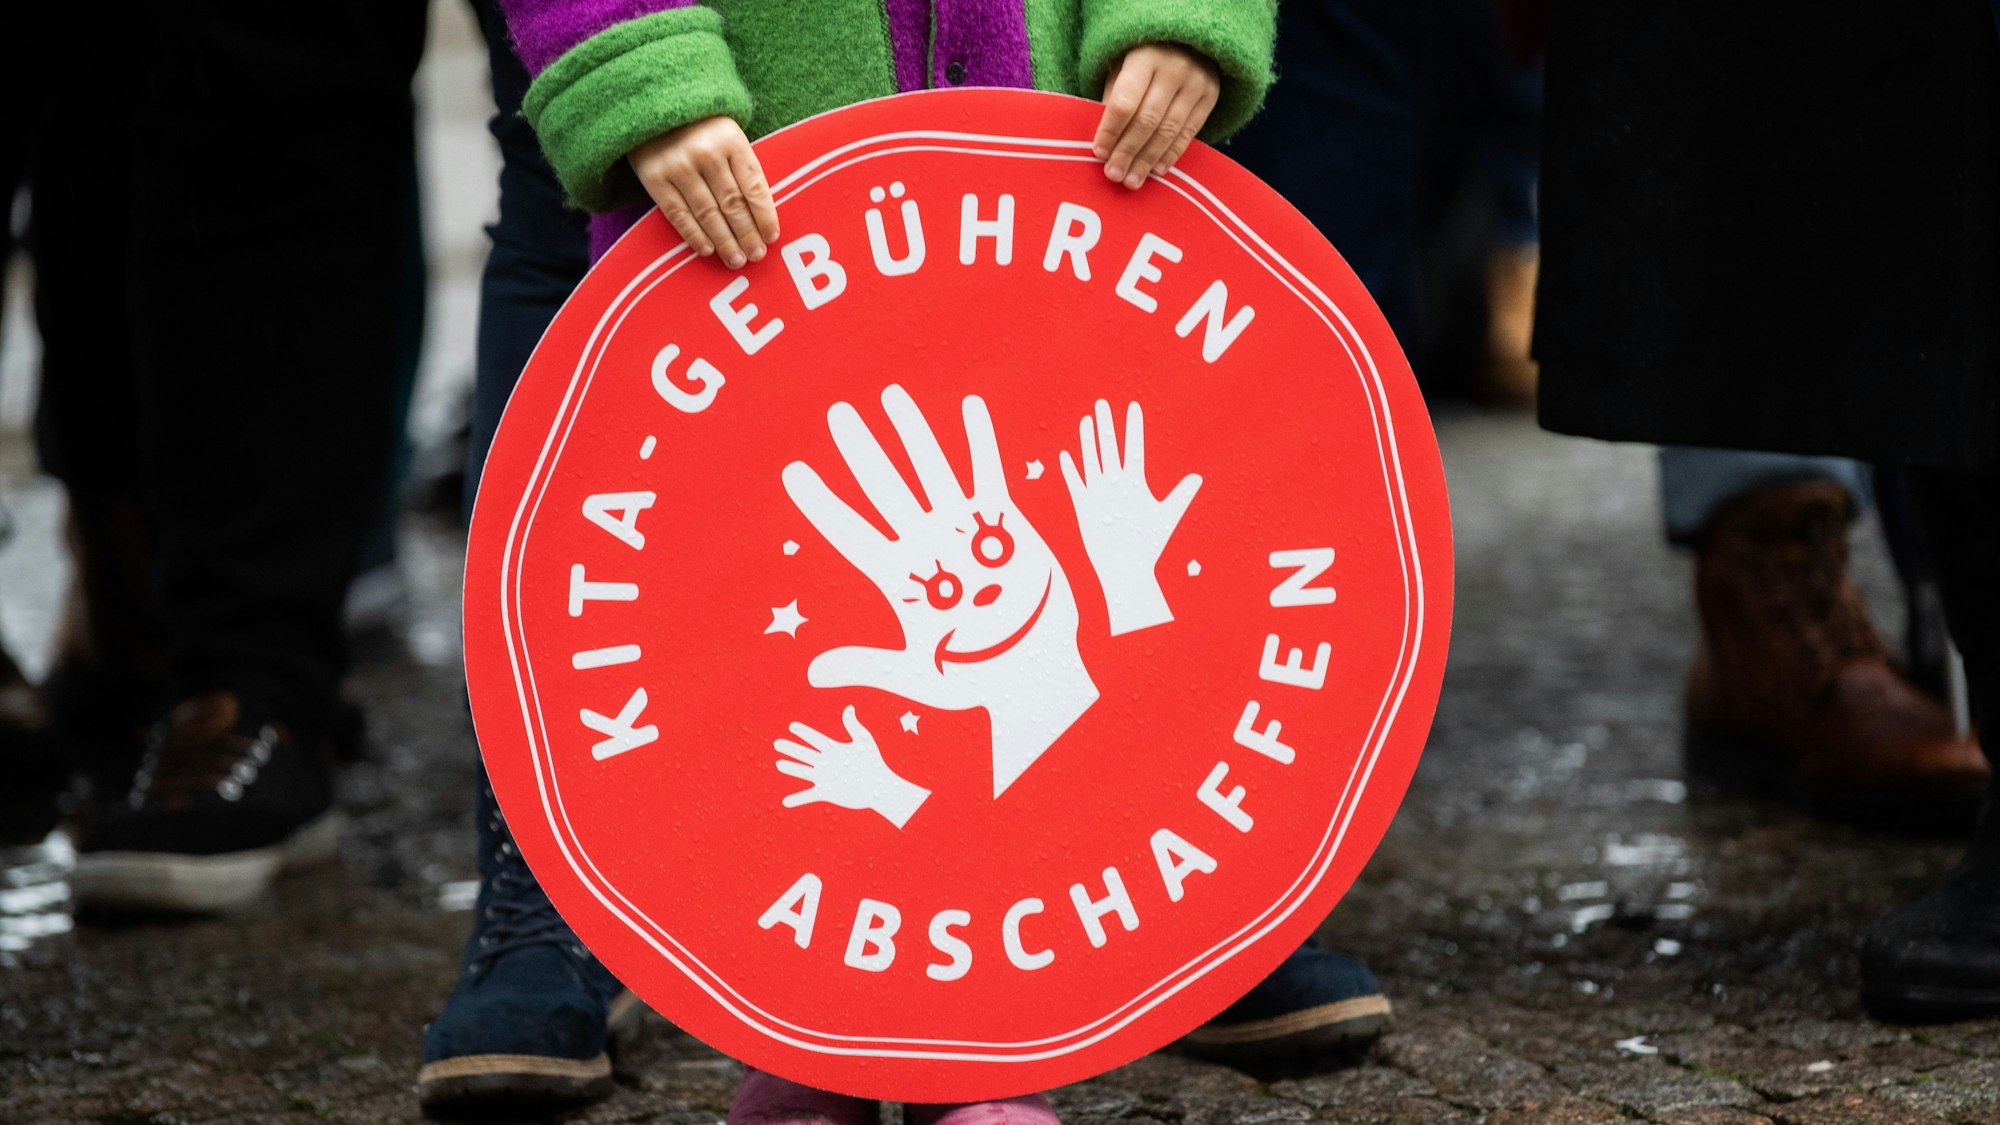 Ein Kind hält ein rotes, rundes Plakat mit der Aufschrift "Kita-Gebühren abschaffen" vor sich.